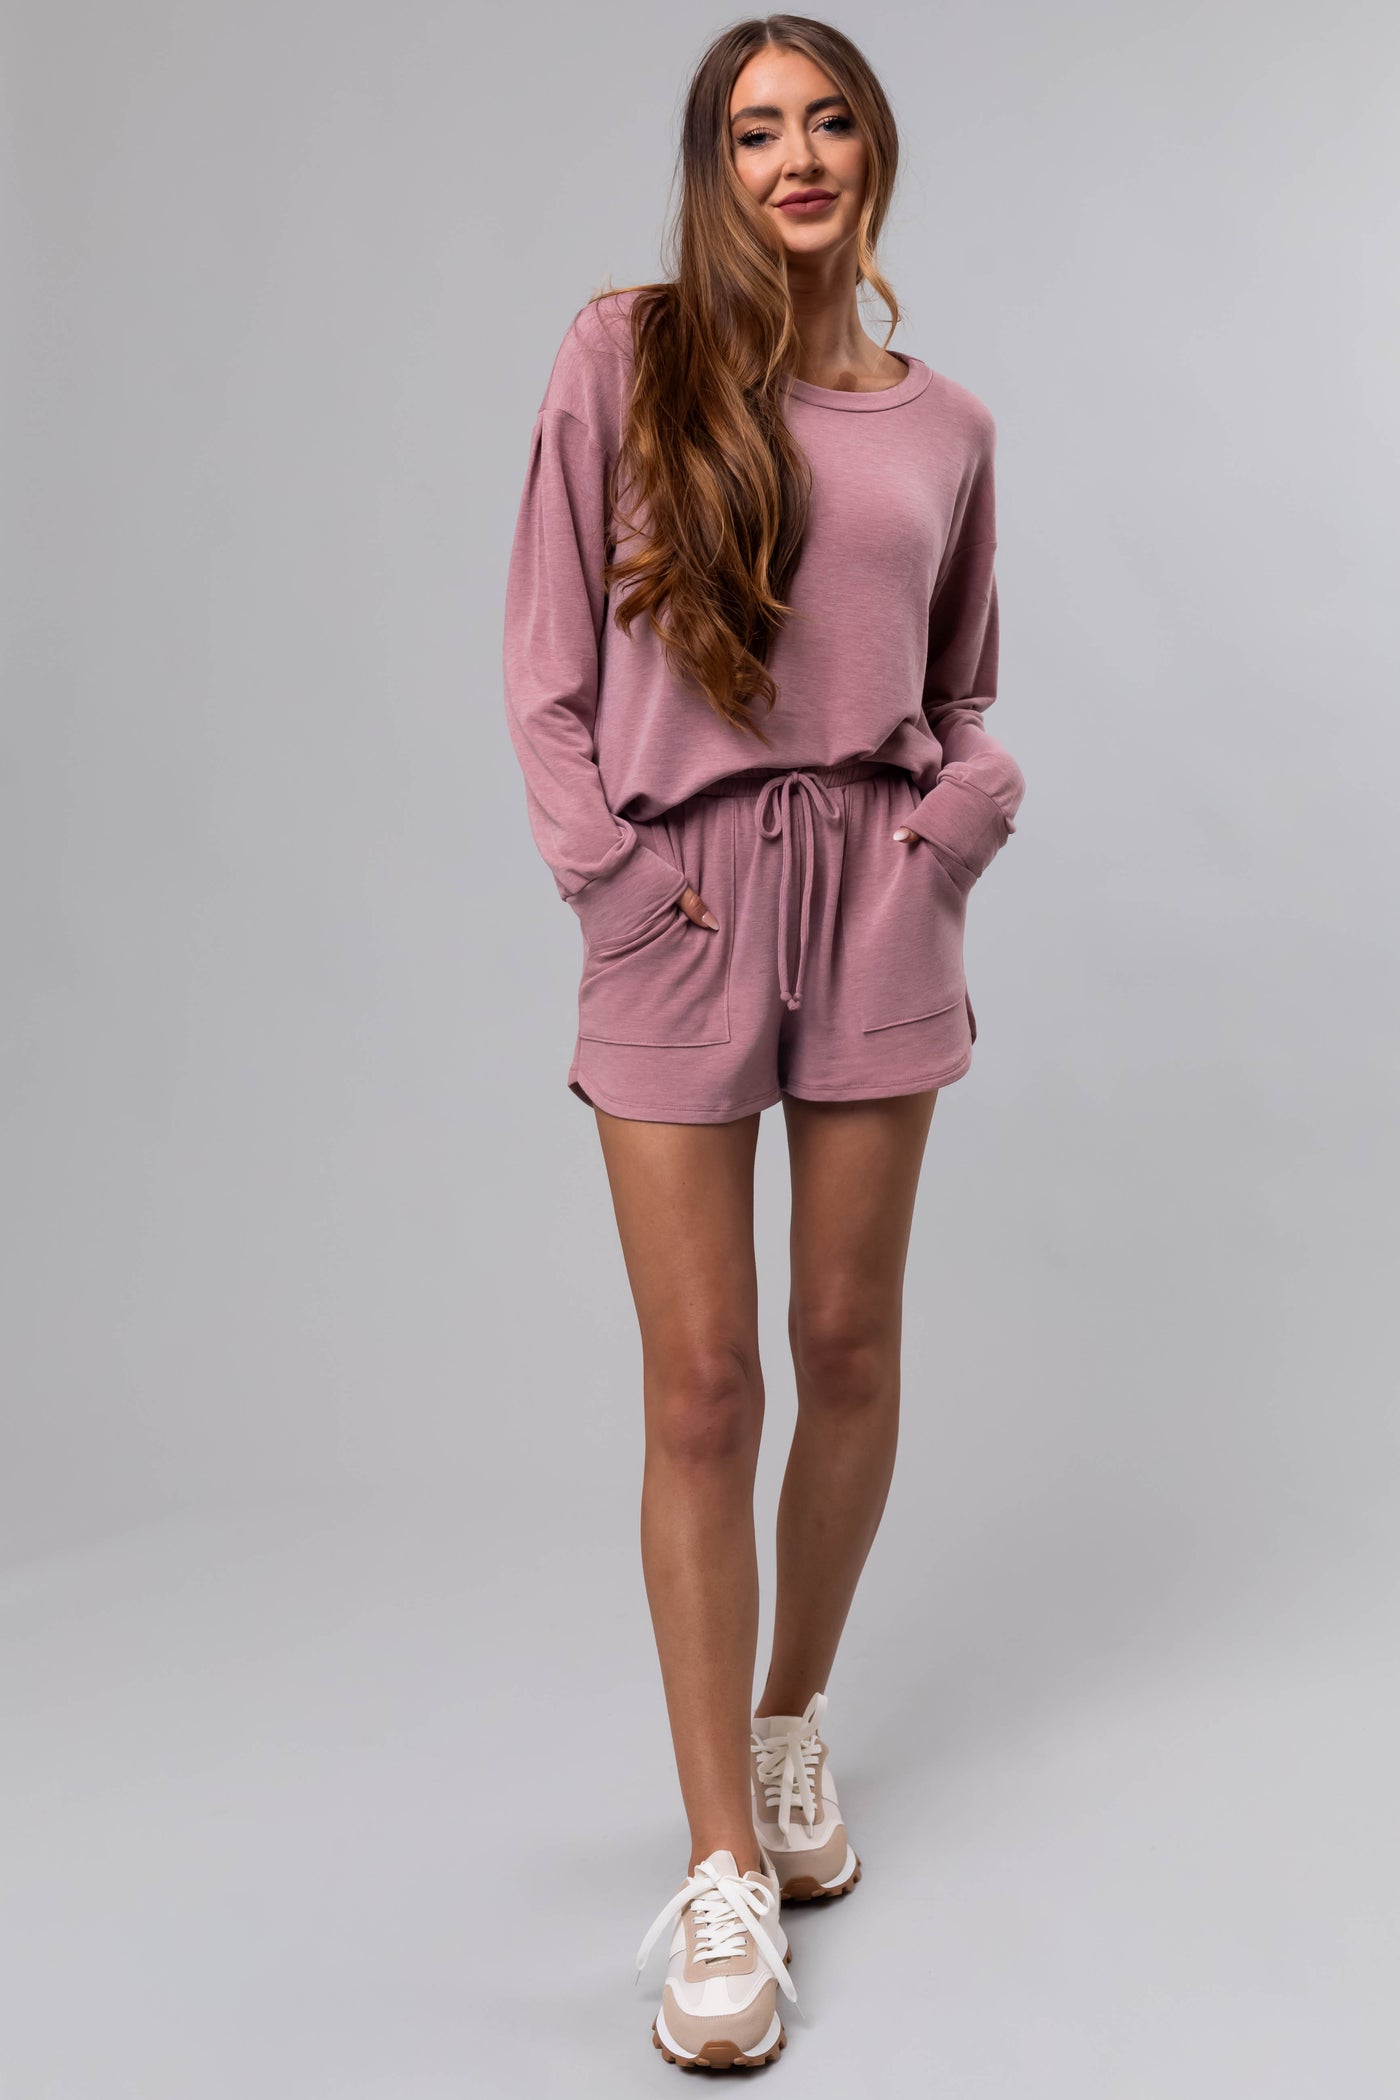 Heathered Rose Soft Knit Elastic Shorts